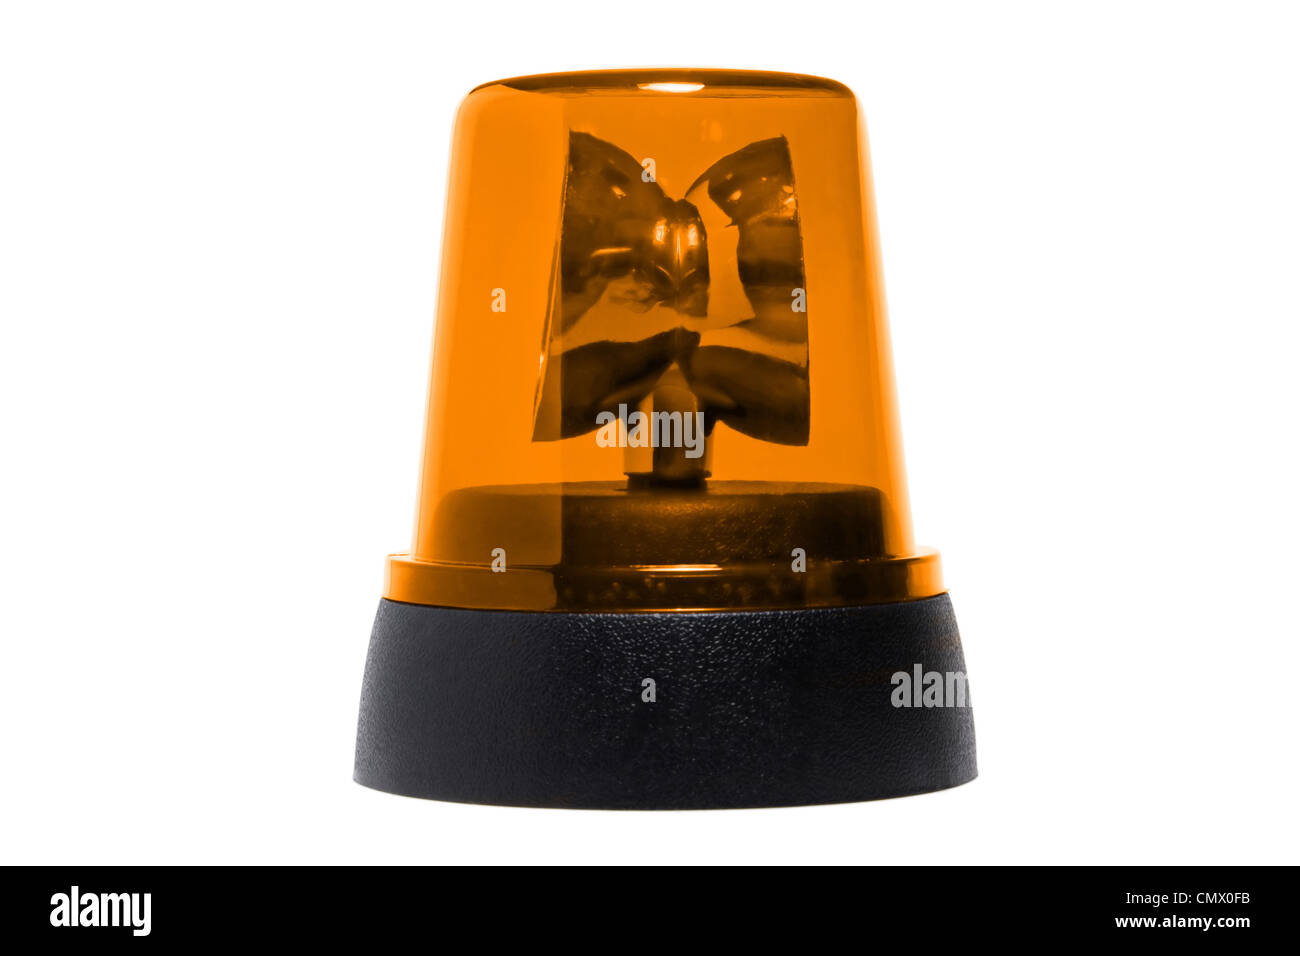 Rundumleuchte orange leuchtet alarm Stock-Foto